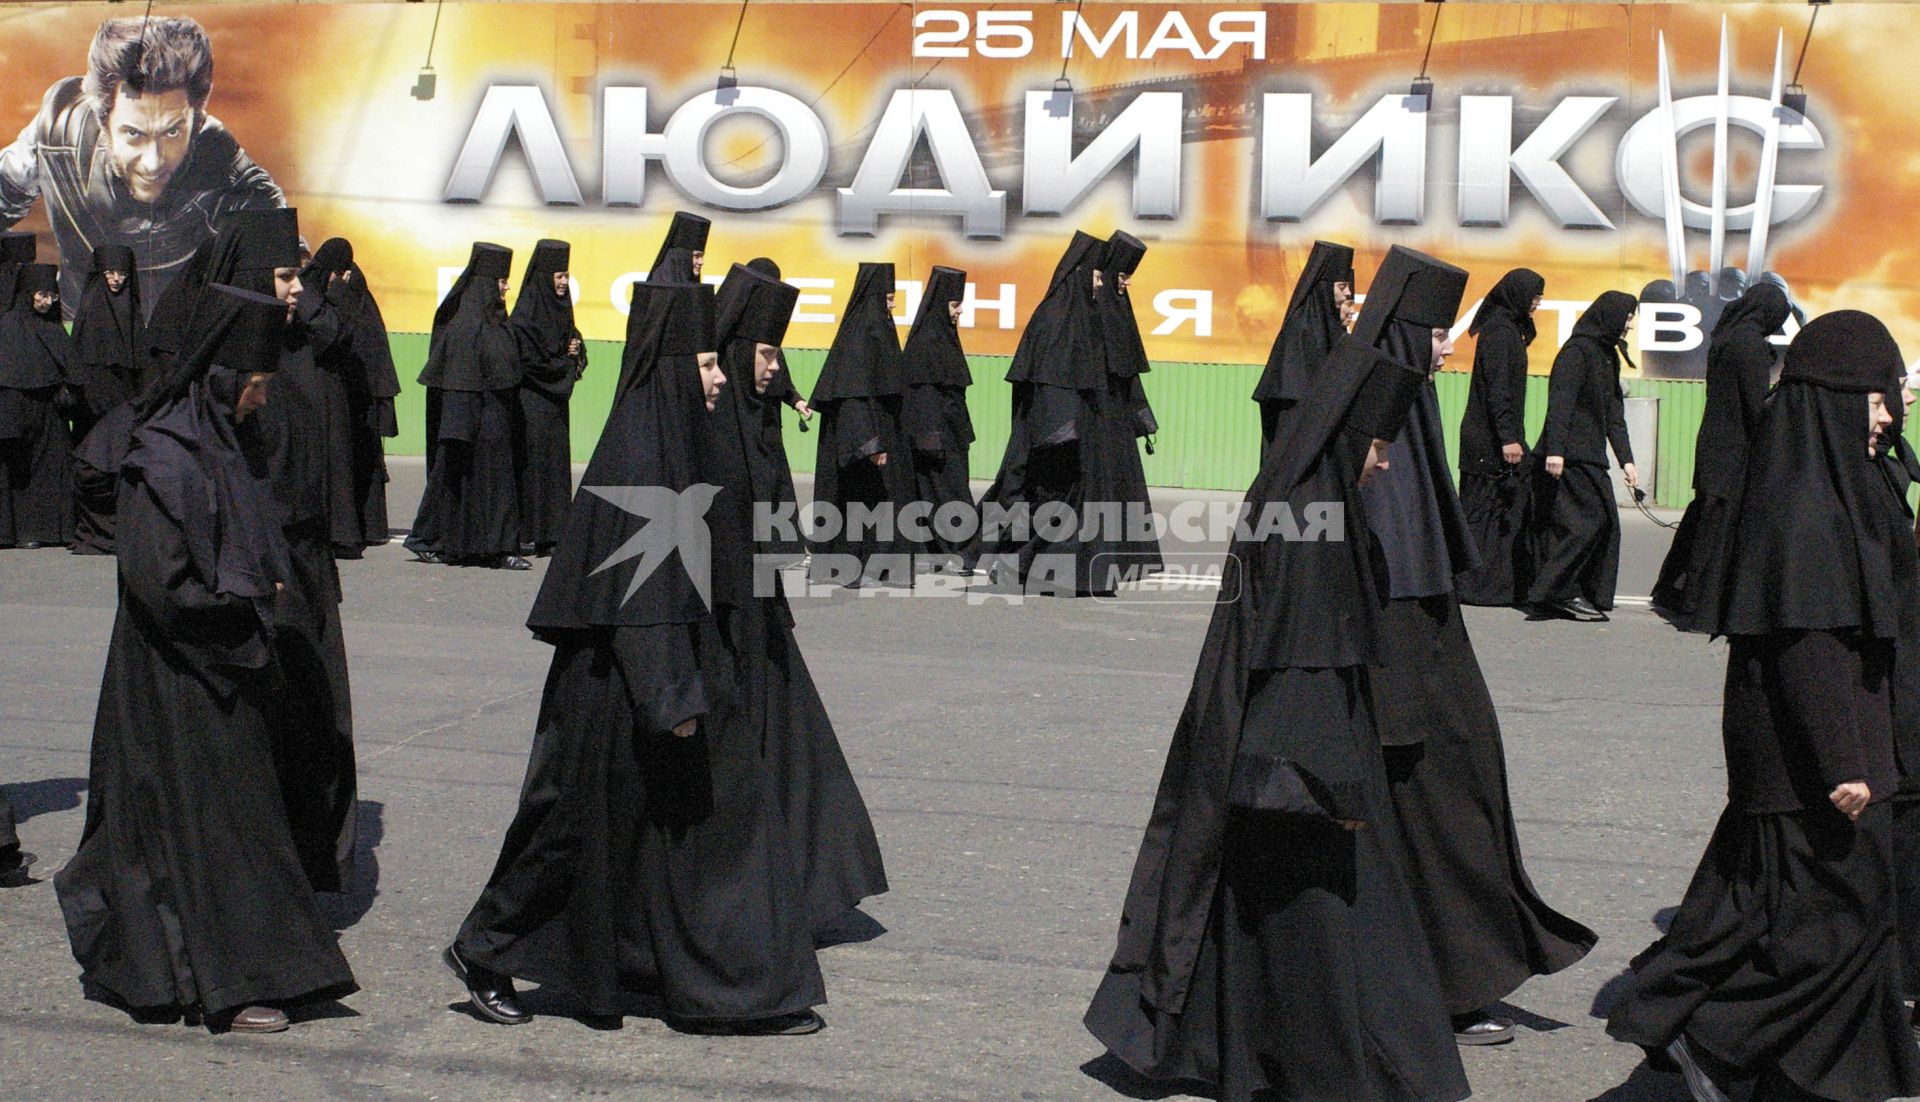 Монашки идут по улице на фоне плаката фильма: `Люди икс`.